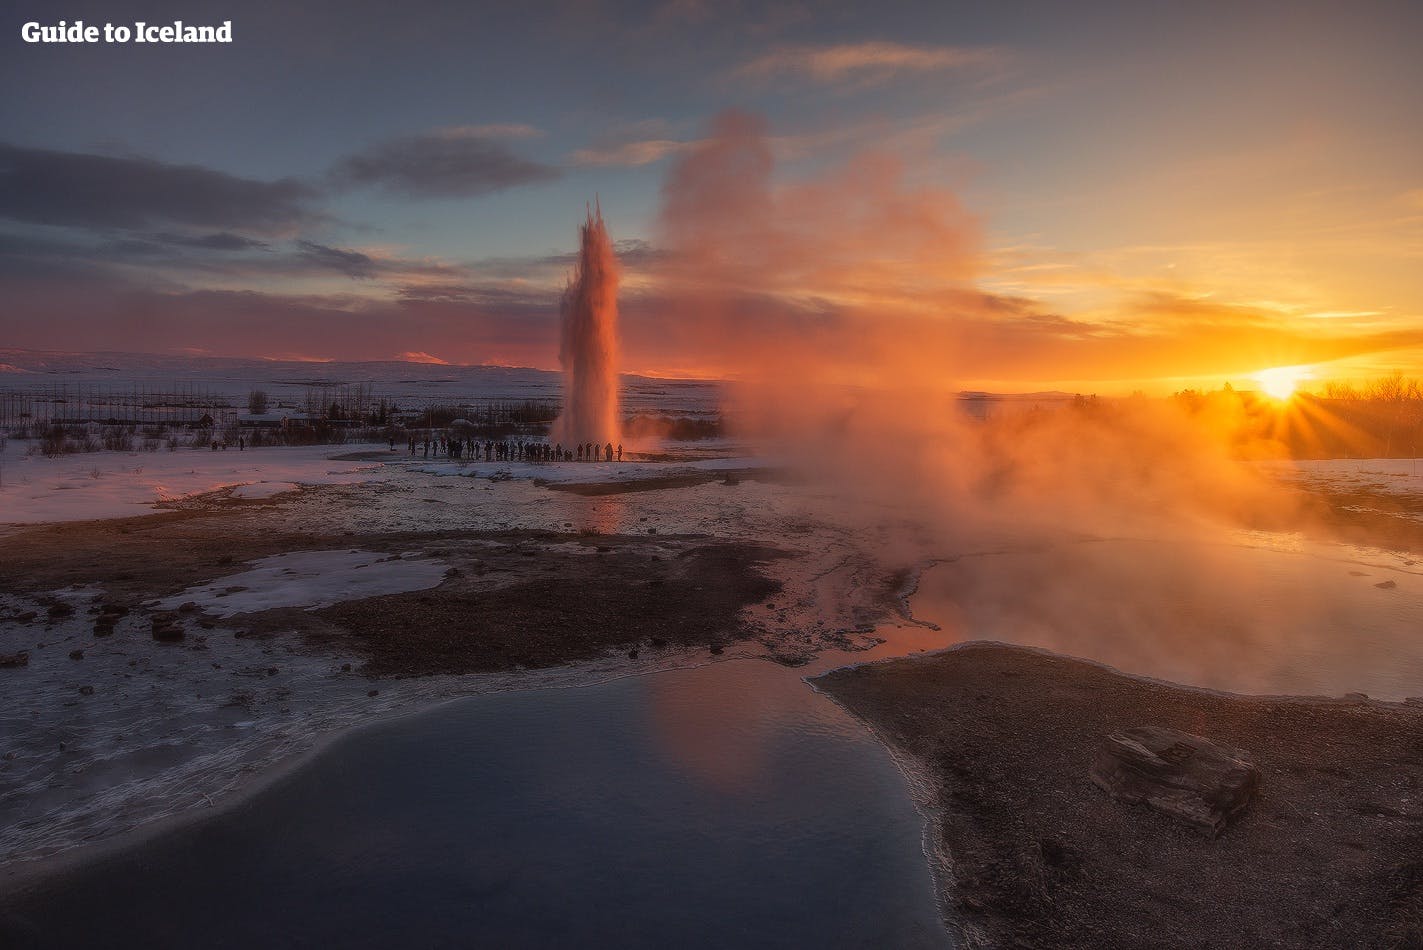 Los efectos del constante 'crepúsculo' que traen las pocas horas de sol en el invierno de Islandia permiten oportunidades de fotos en lugares como el Área Geotérmica de Geysir en el sur de Islandia.